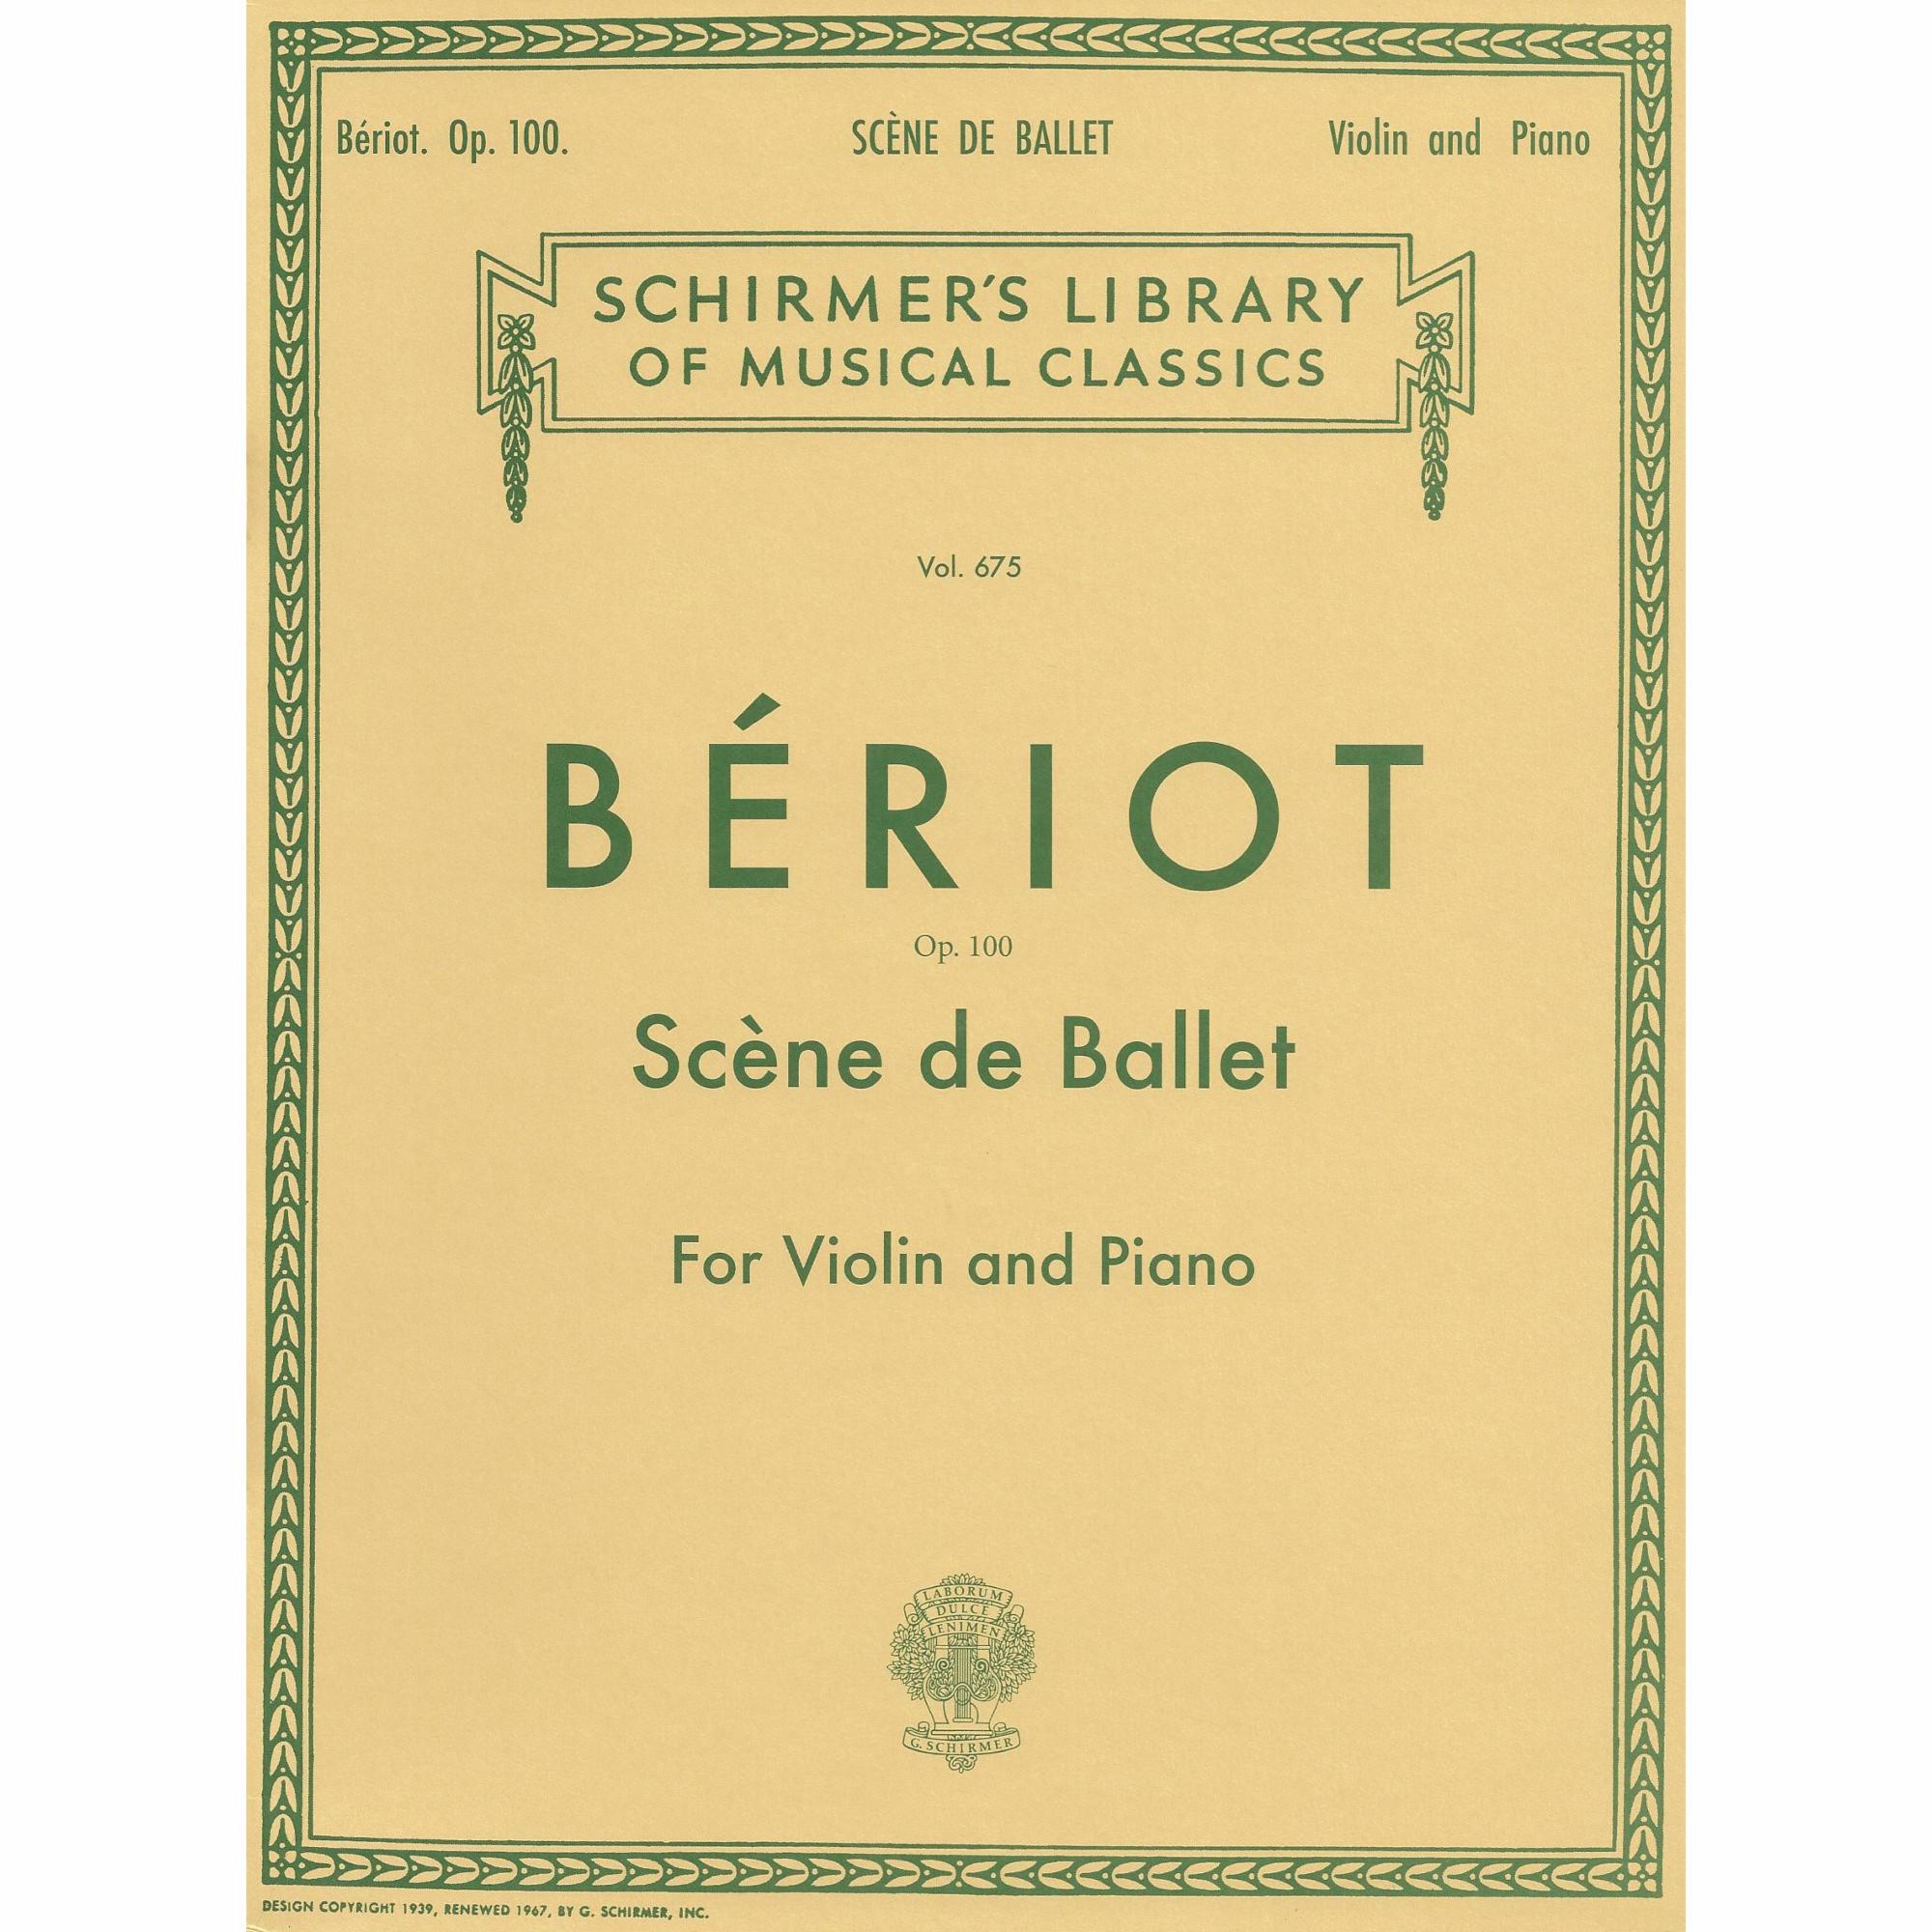 Beriot -- Scene de Ballet, Op. 100 for Violin and Piano